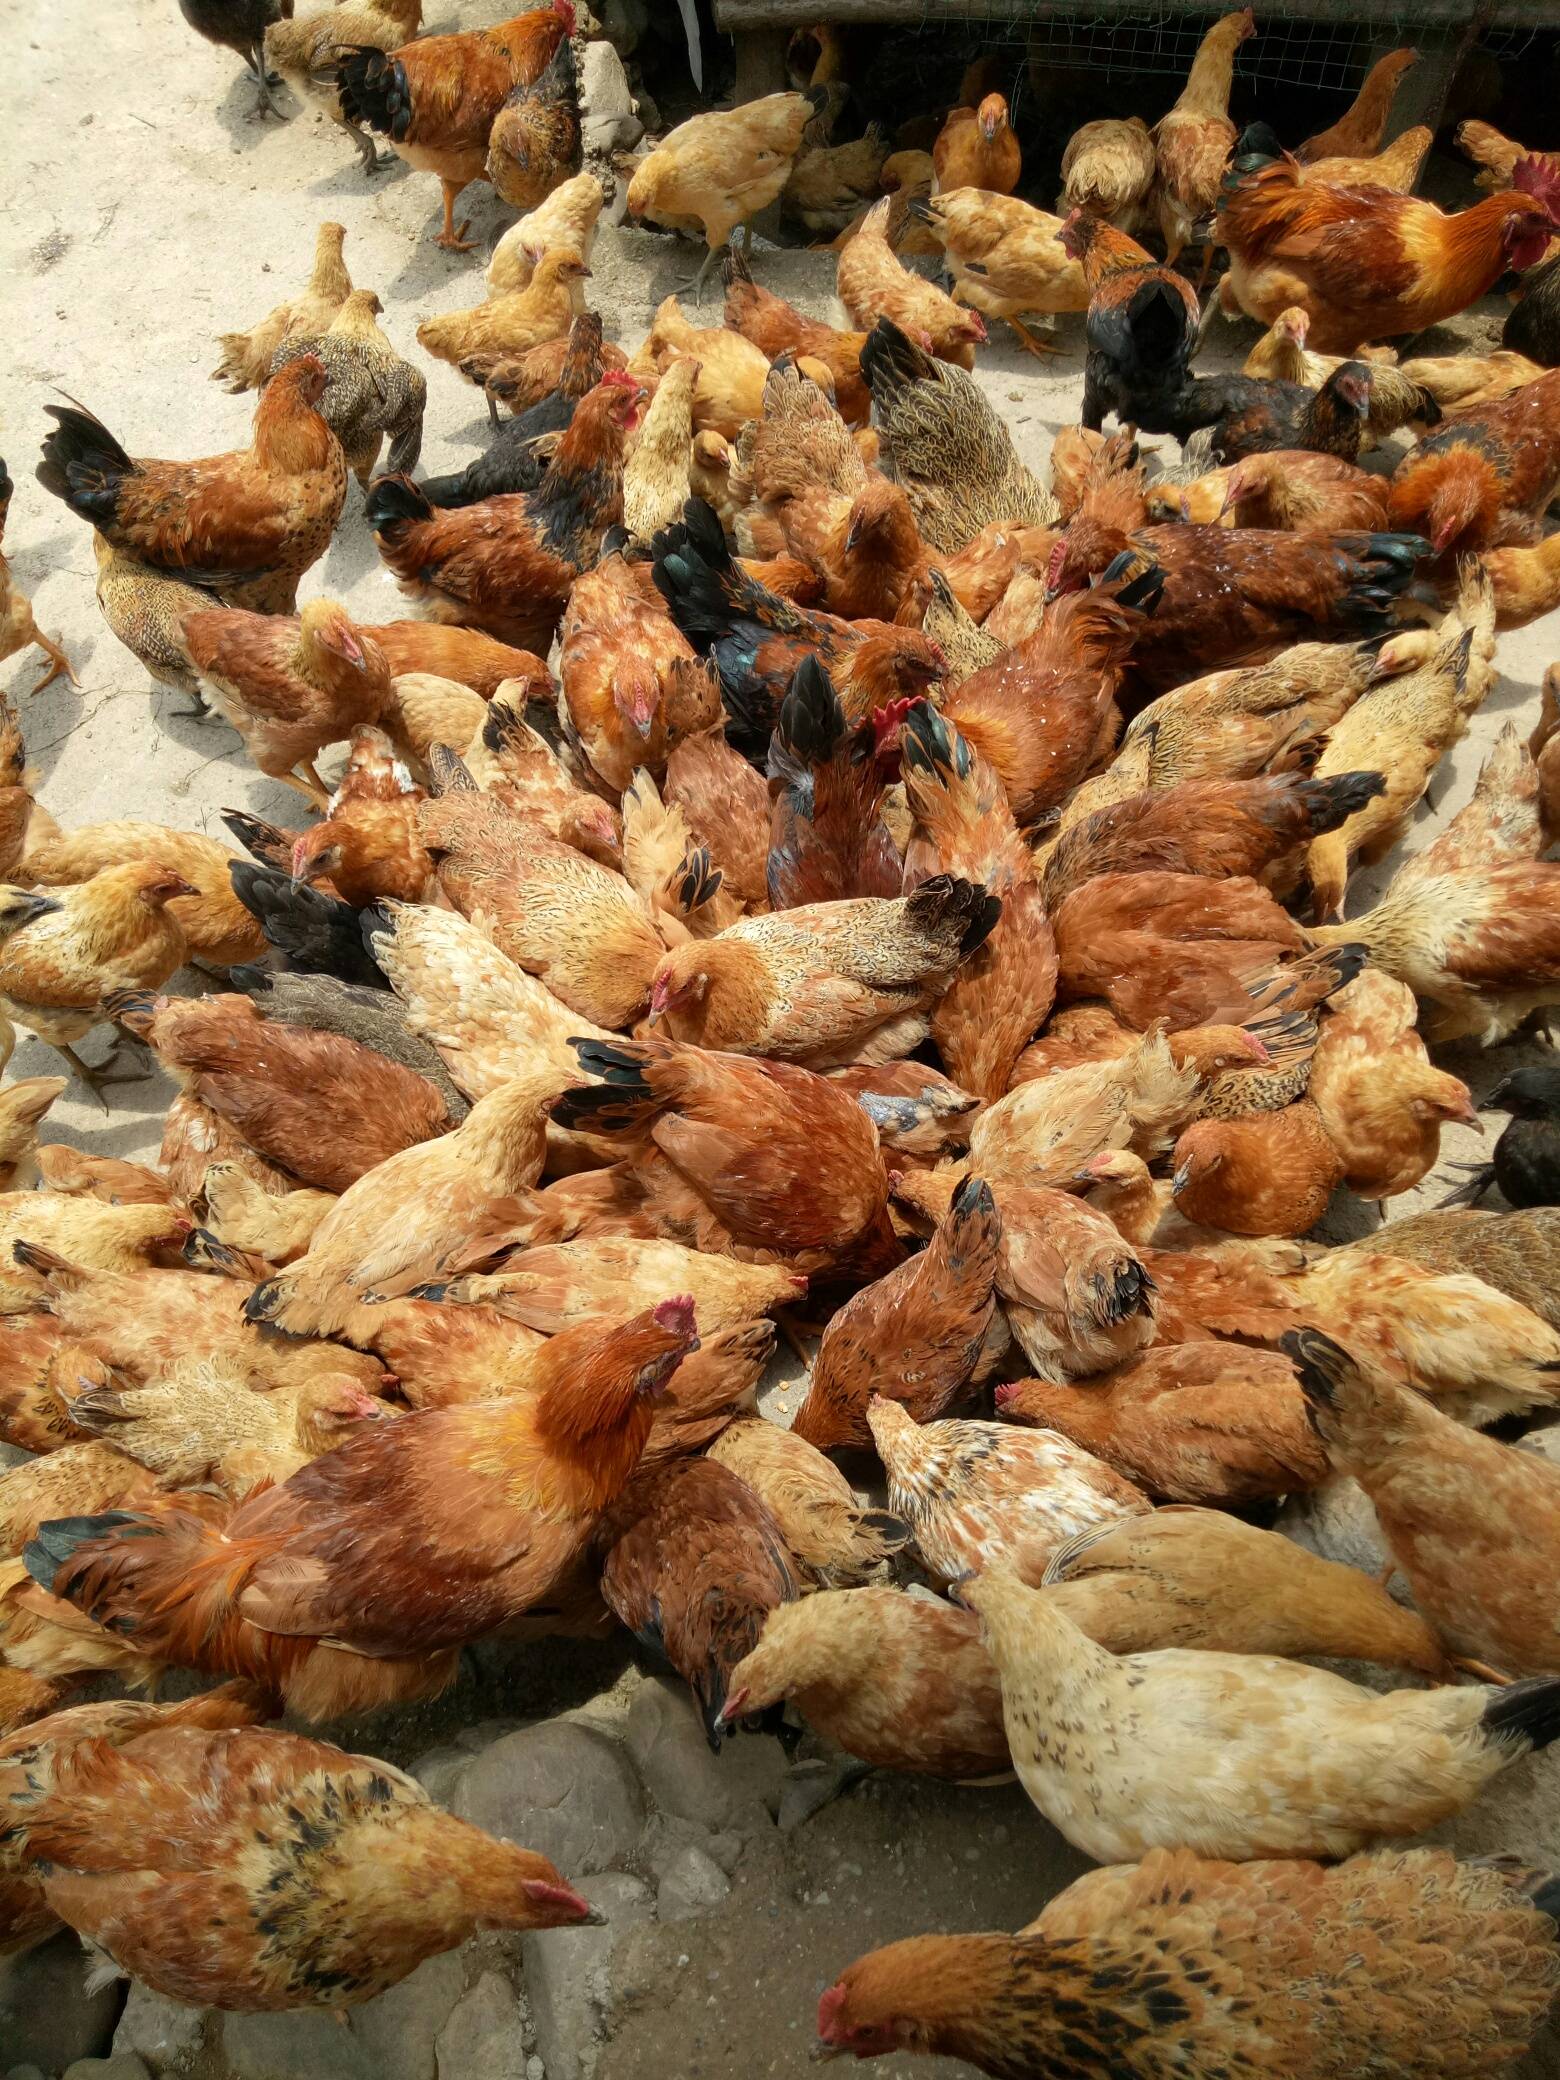 恭城县栗木镇石头村有大量土鸡出售，有需要的赶紧来！电话:18585718655438 / 作者:田素荣 / 帖子ID:271846